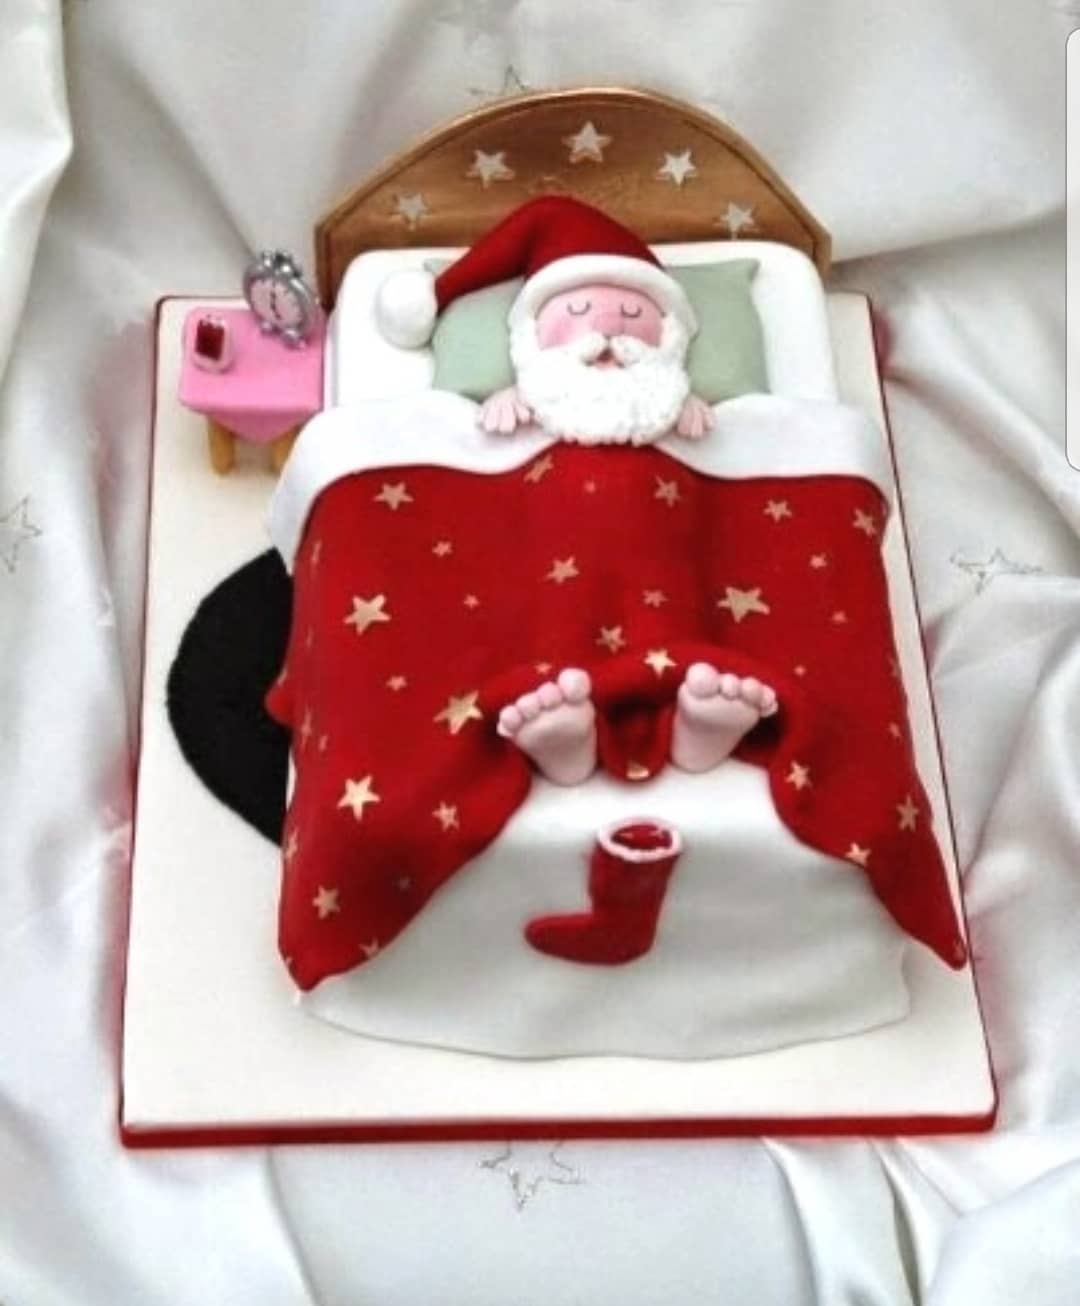 Sleeping Santa cake. Pic by christmasuglysweater